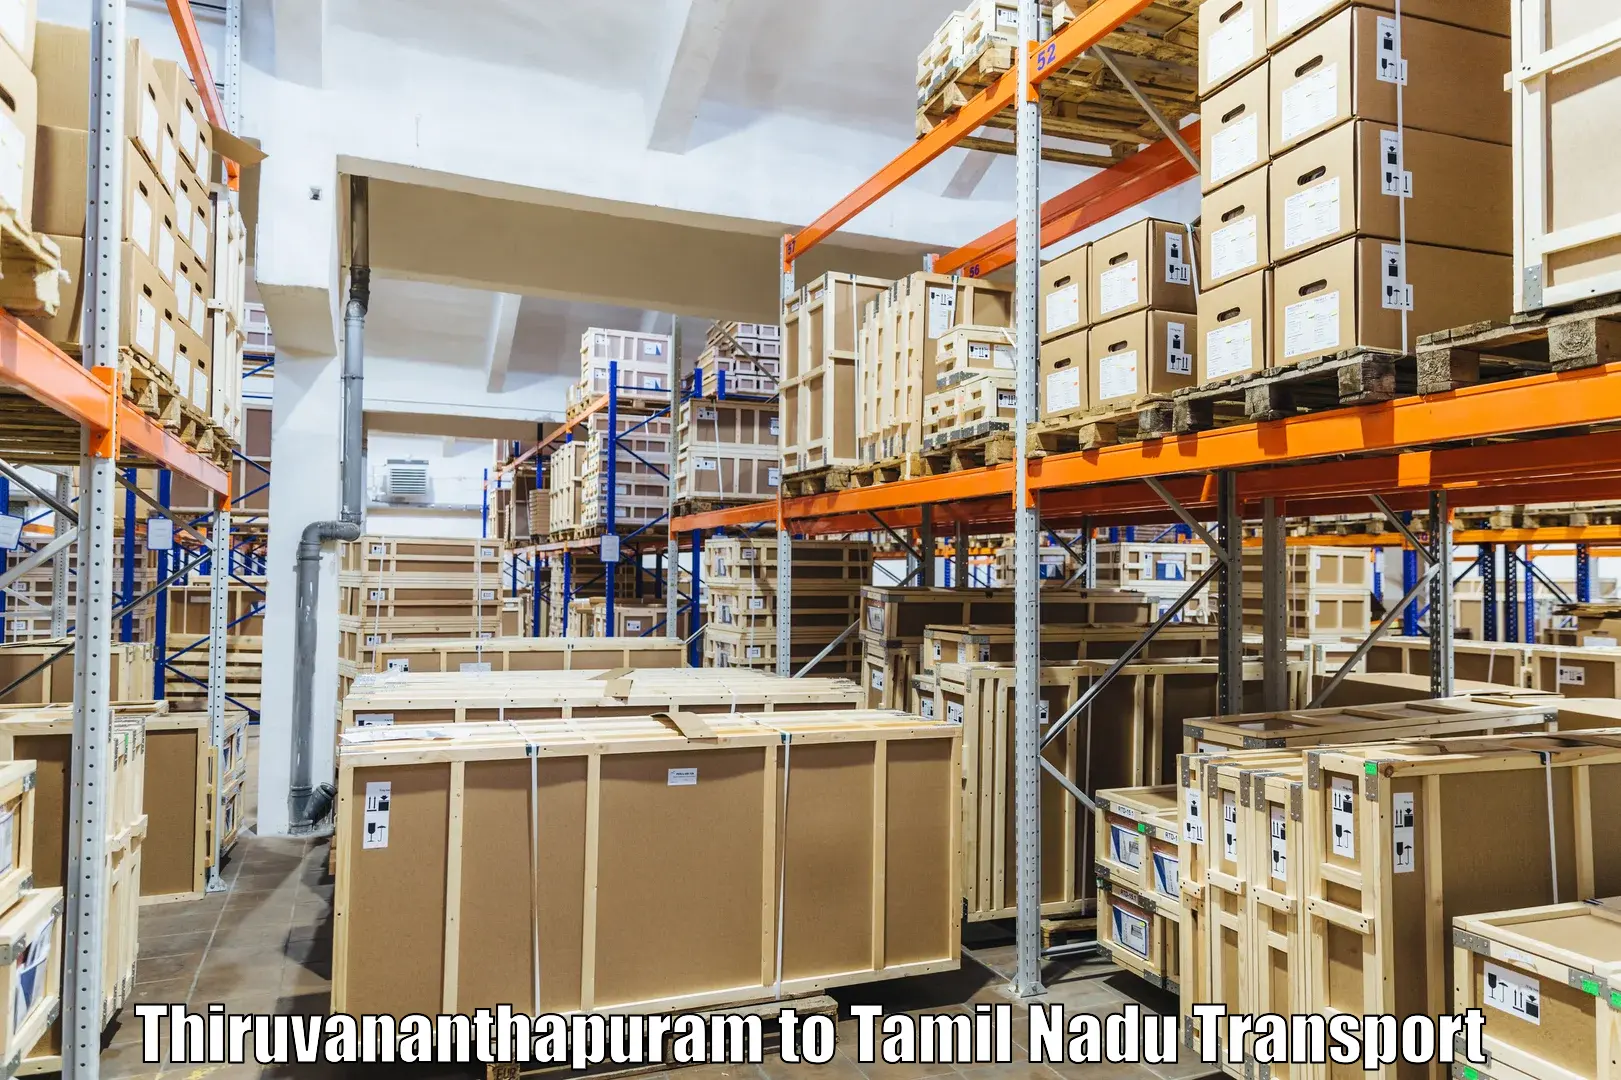 Daily transport service Thiruvananthapuram to Vandavasi